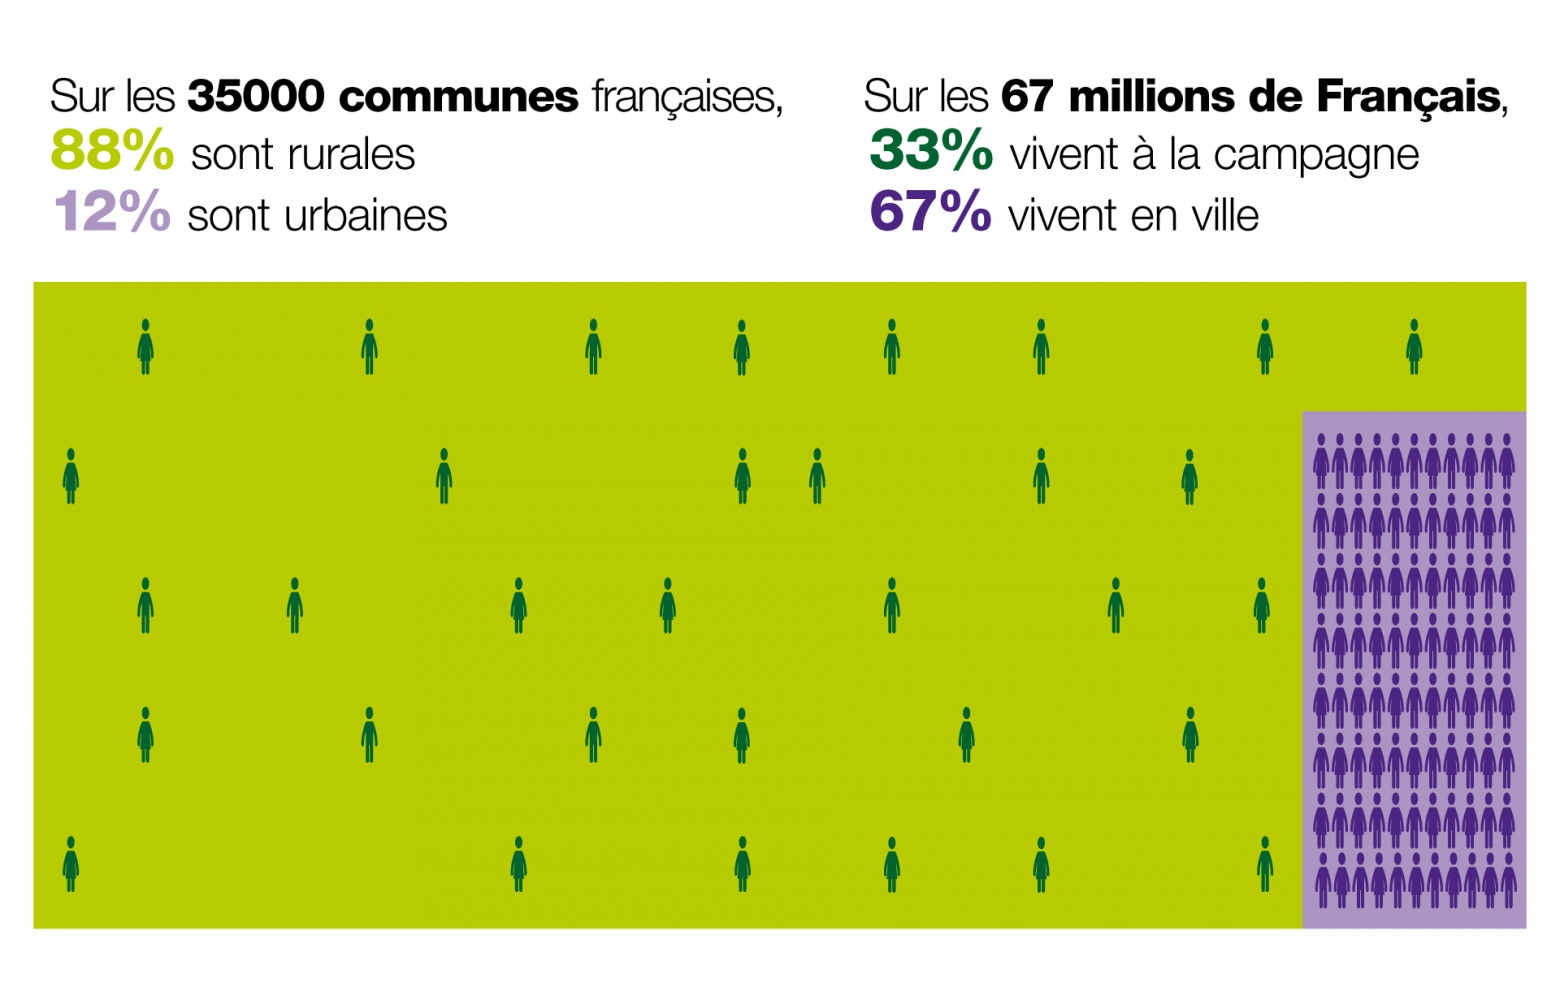 sur les 35 000 communes françaises, 88% sont rurales, 12% sont urbaines
sur les 67 millions de Français, 33% vivent à la campagne et 67% vivent en ville 